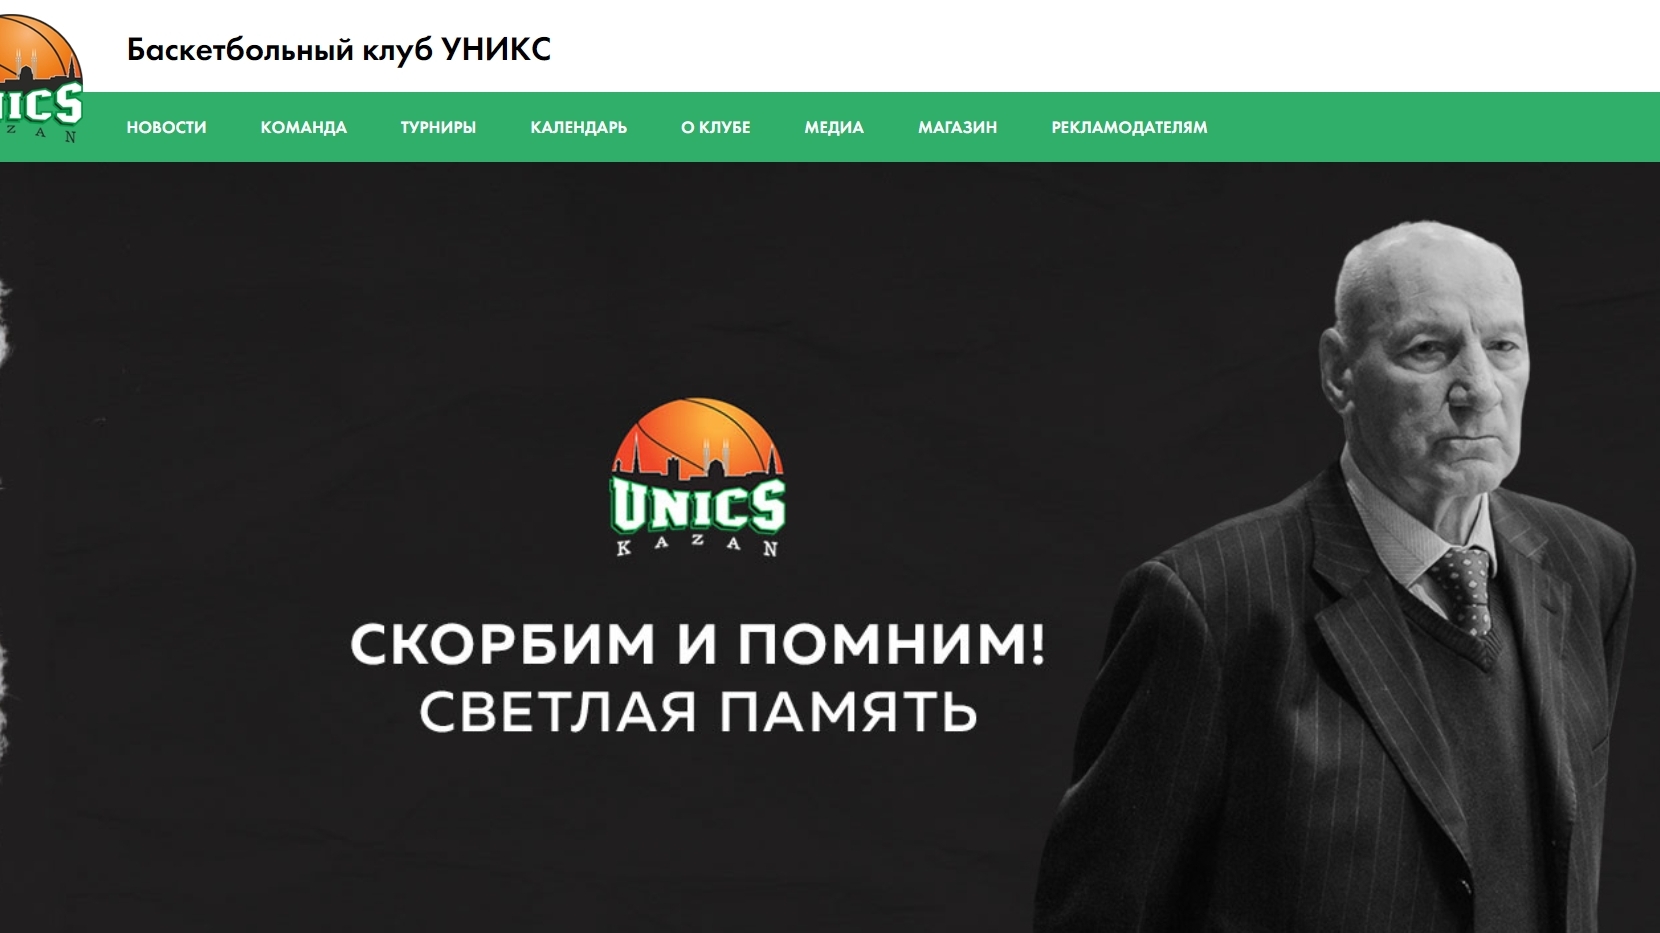 Бывший главный тренер УНИКСа Александр Зрядчиков скончался в возрасте 76 лет